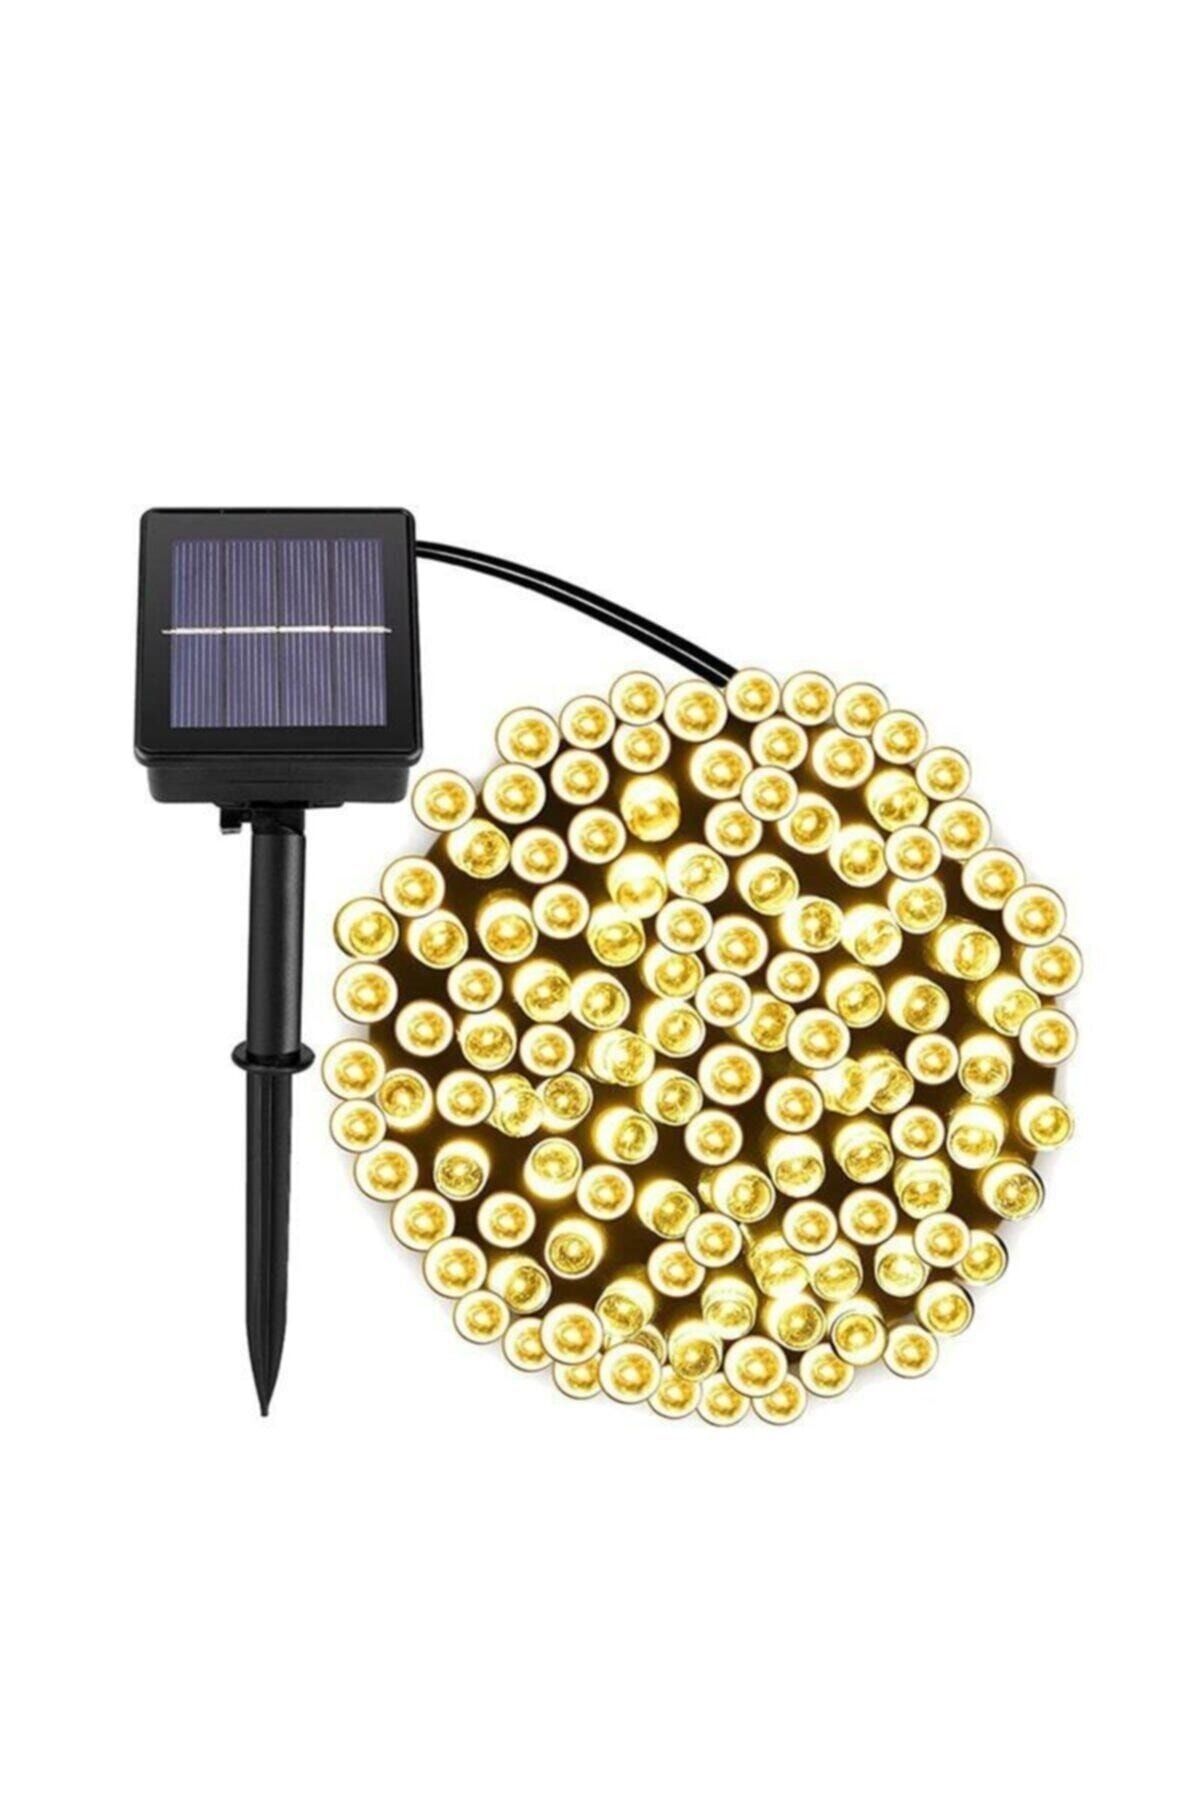 SARFEX Solar 100 Ledli 12 Metre Gün Işığı Bahçe Aydınlatma Dekorasyon Güneş Enerjili Led Sarı Işık